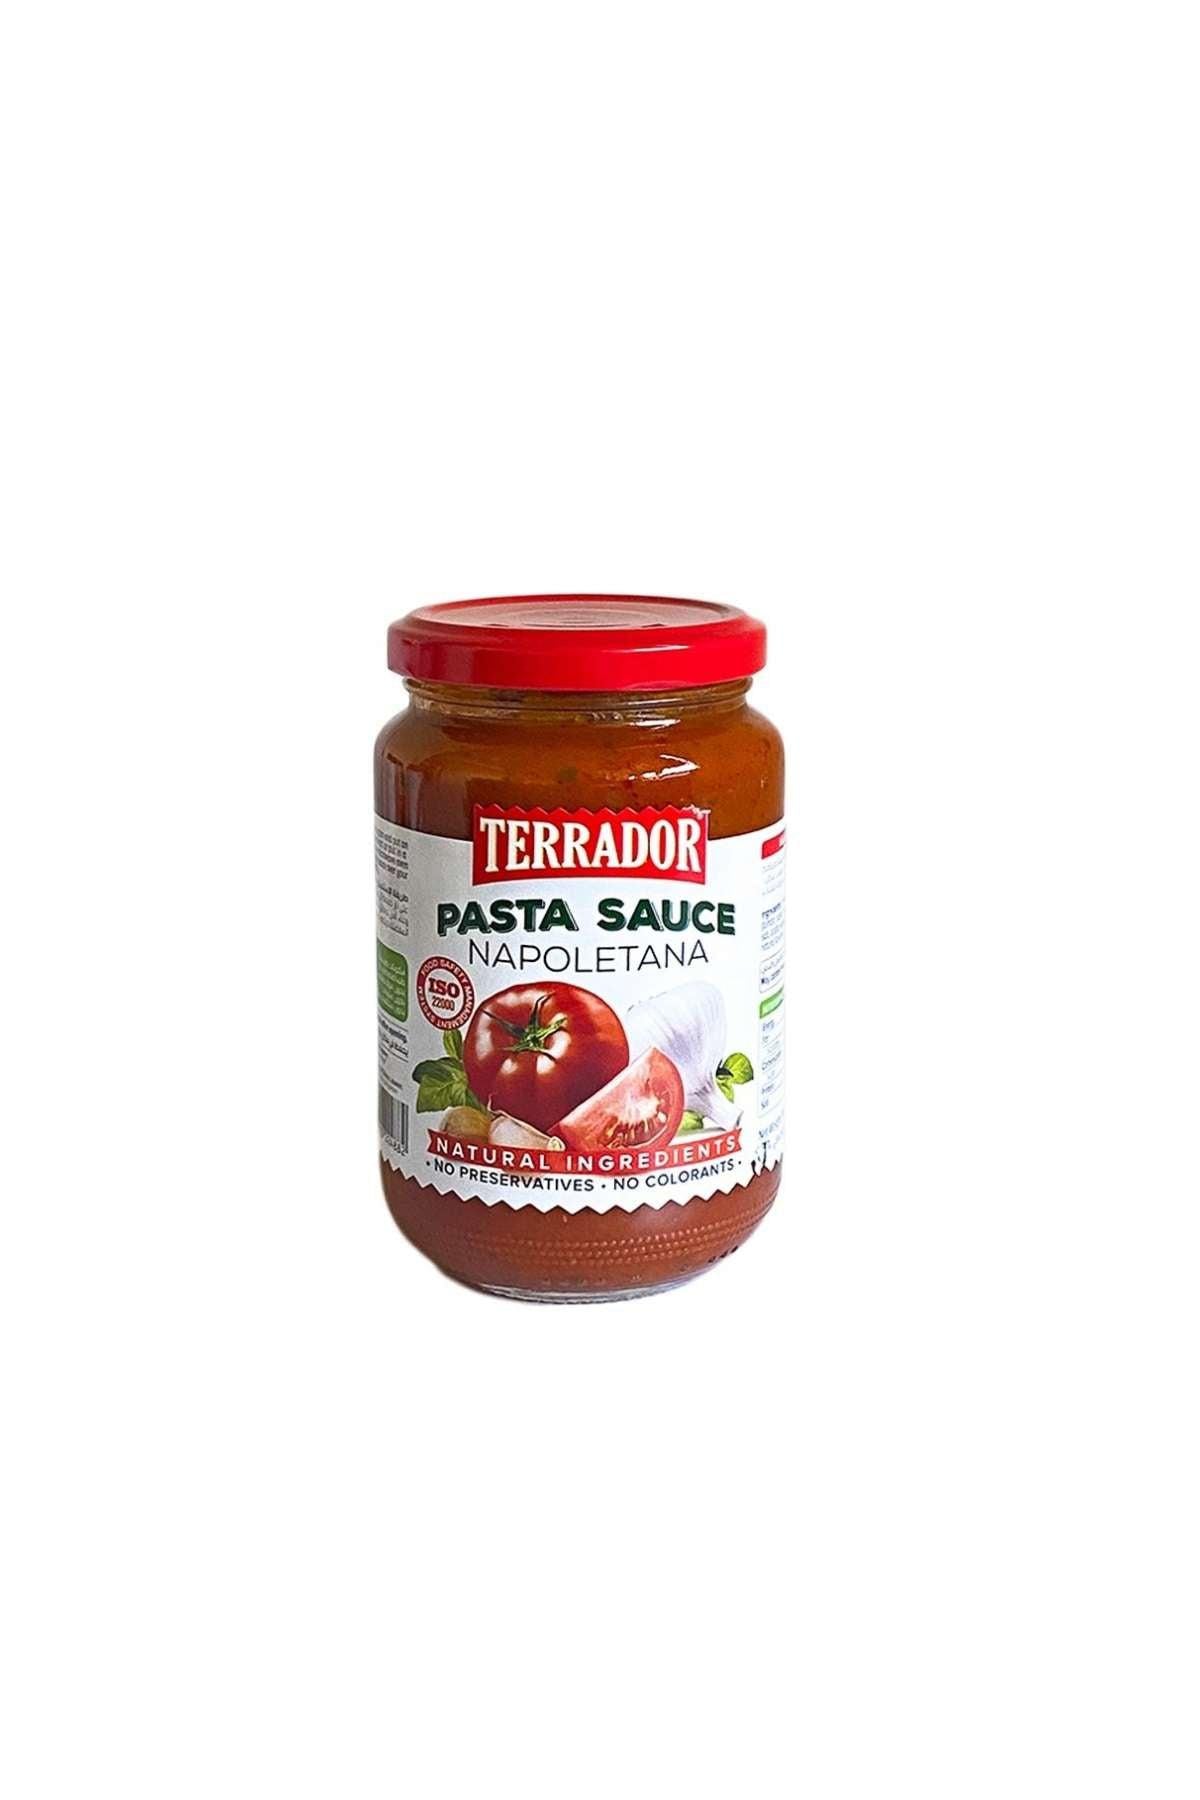 Terrador Napoletana Pasta Sauce 360g